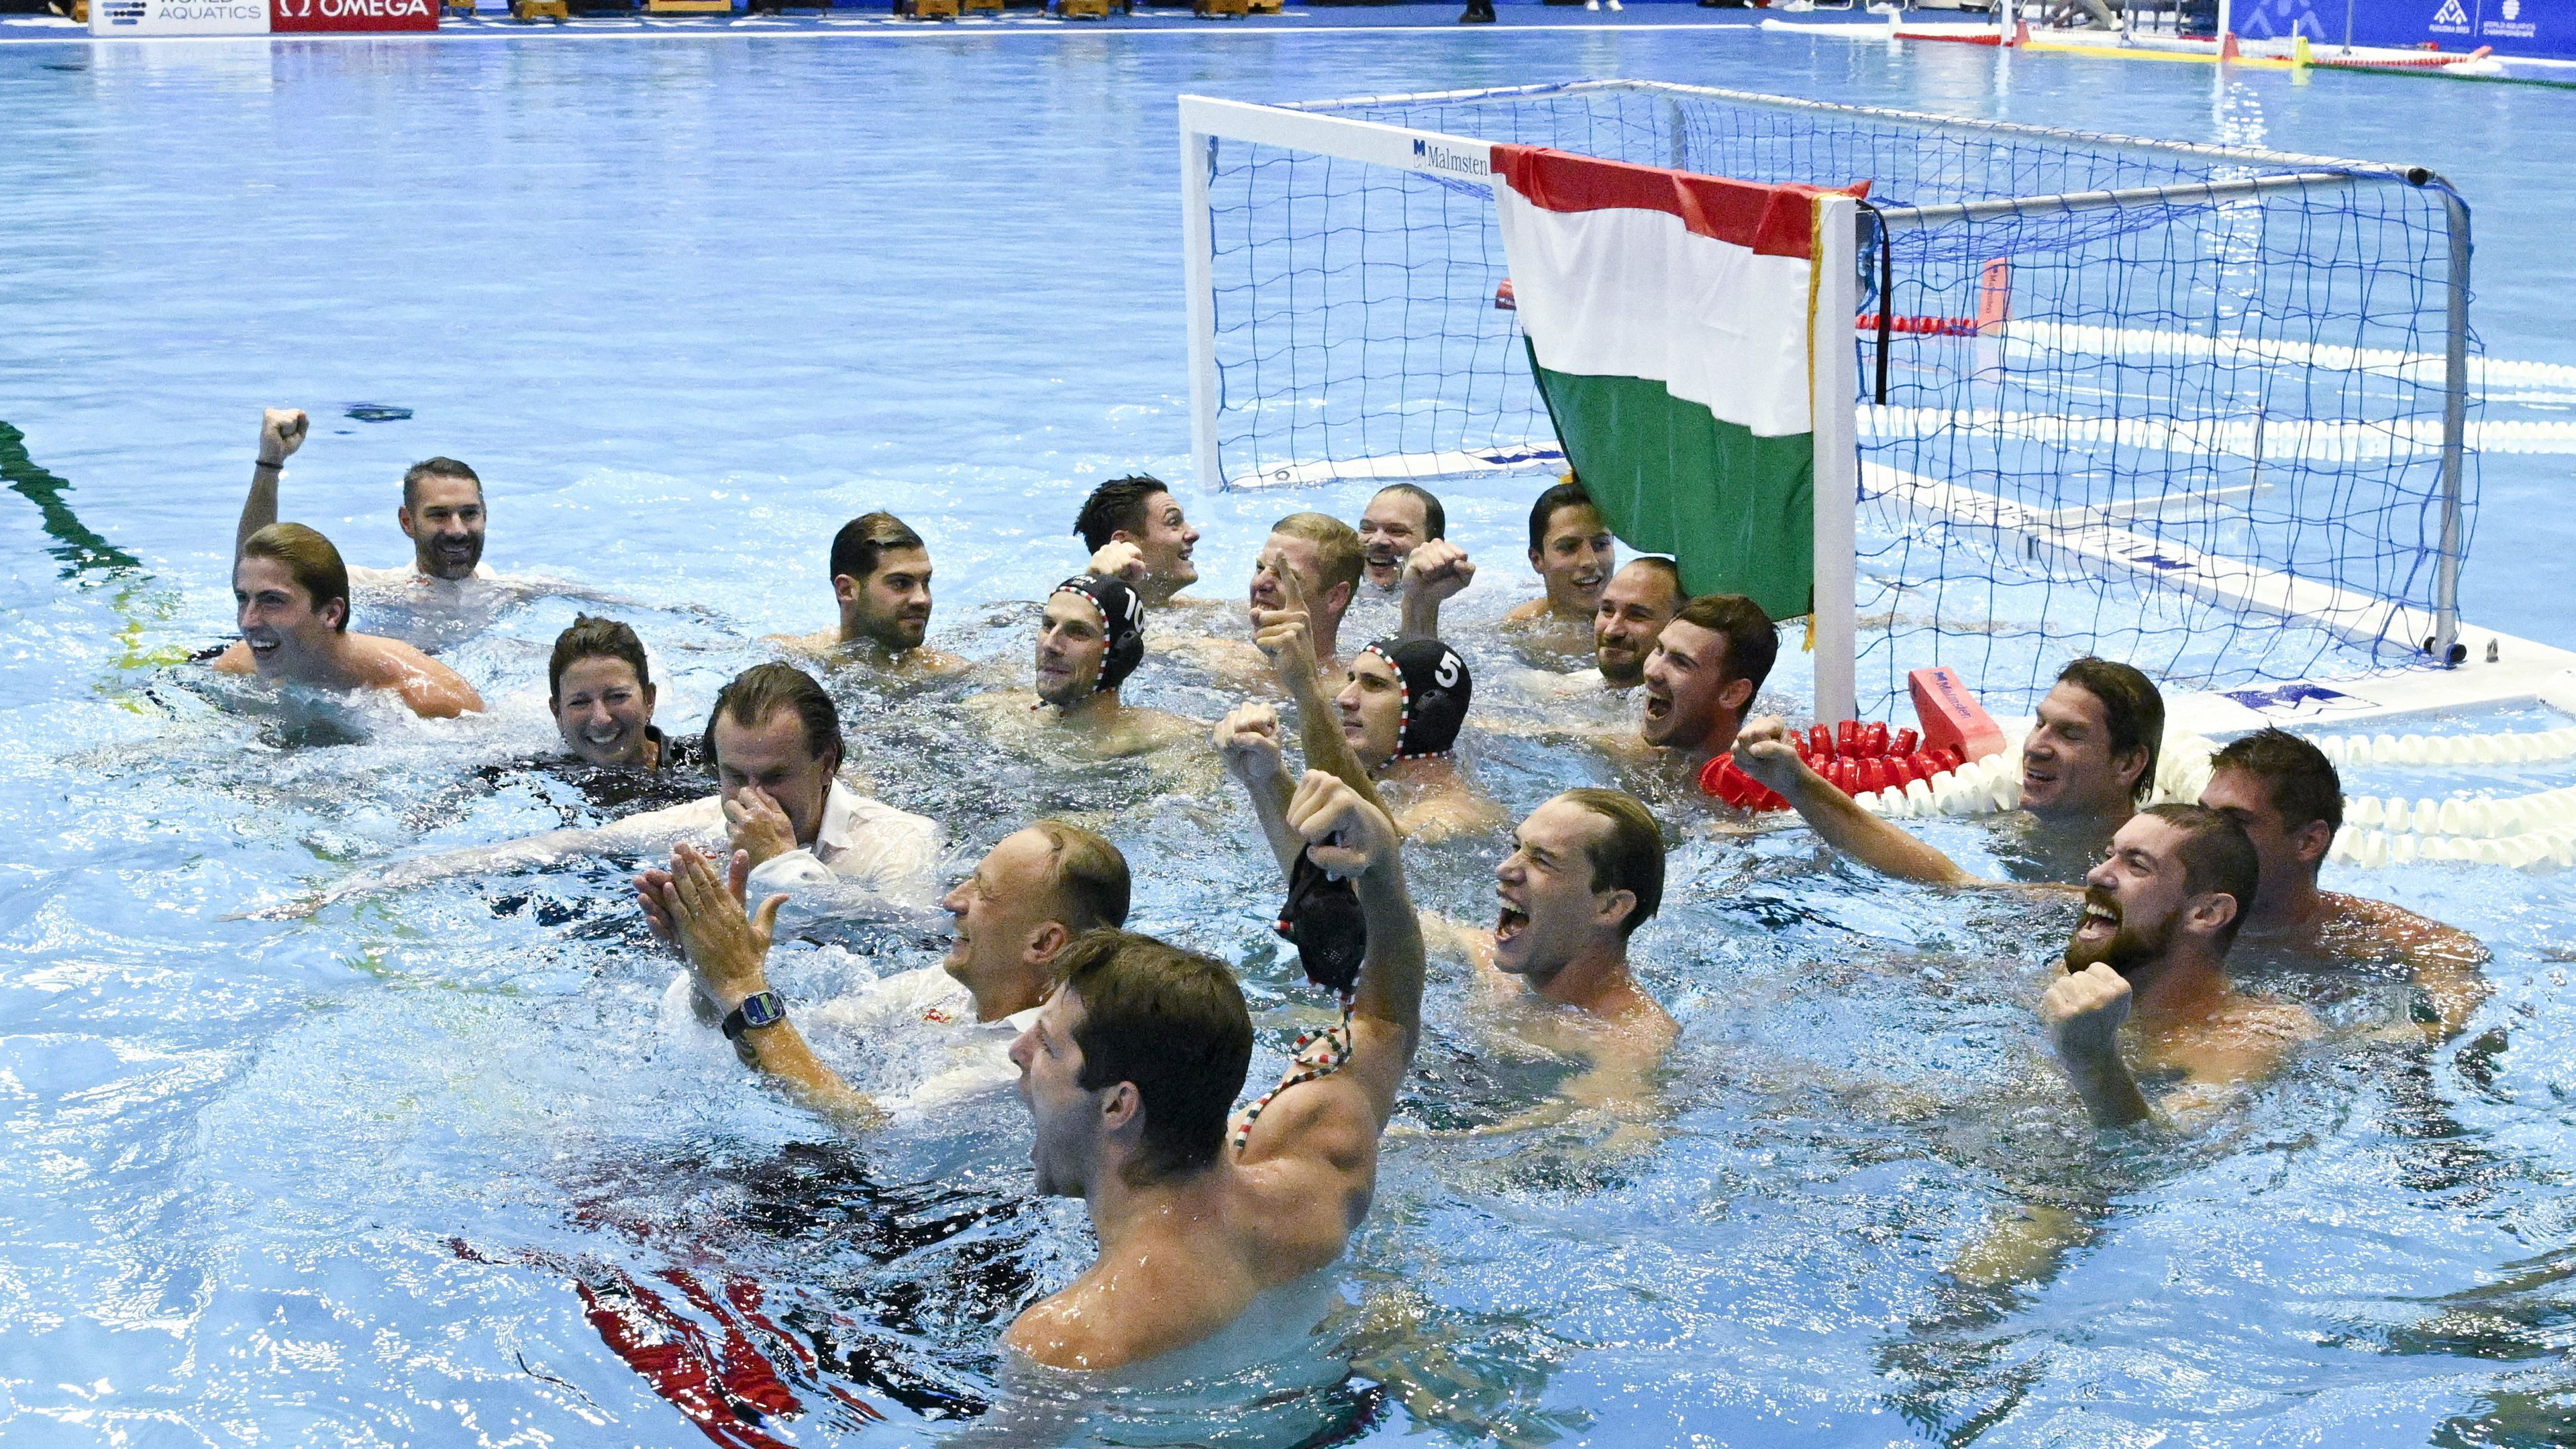 A magyar csapat ünnepli győzelmét a férfi vízilabdatorna döntőjében játszott Magyarország - Görögország mérkőzés végén. A magyar férfi vízilabda-válogatott ötméteresek után 14-13-ra győzött a görög csapat ellen és aranyérmet nyert. MTI/Koszticsák Szilárd